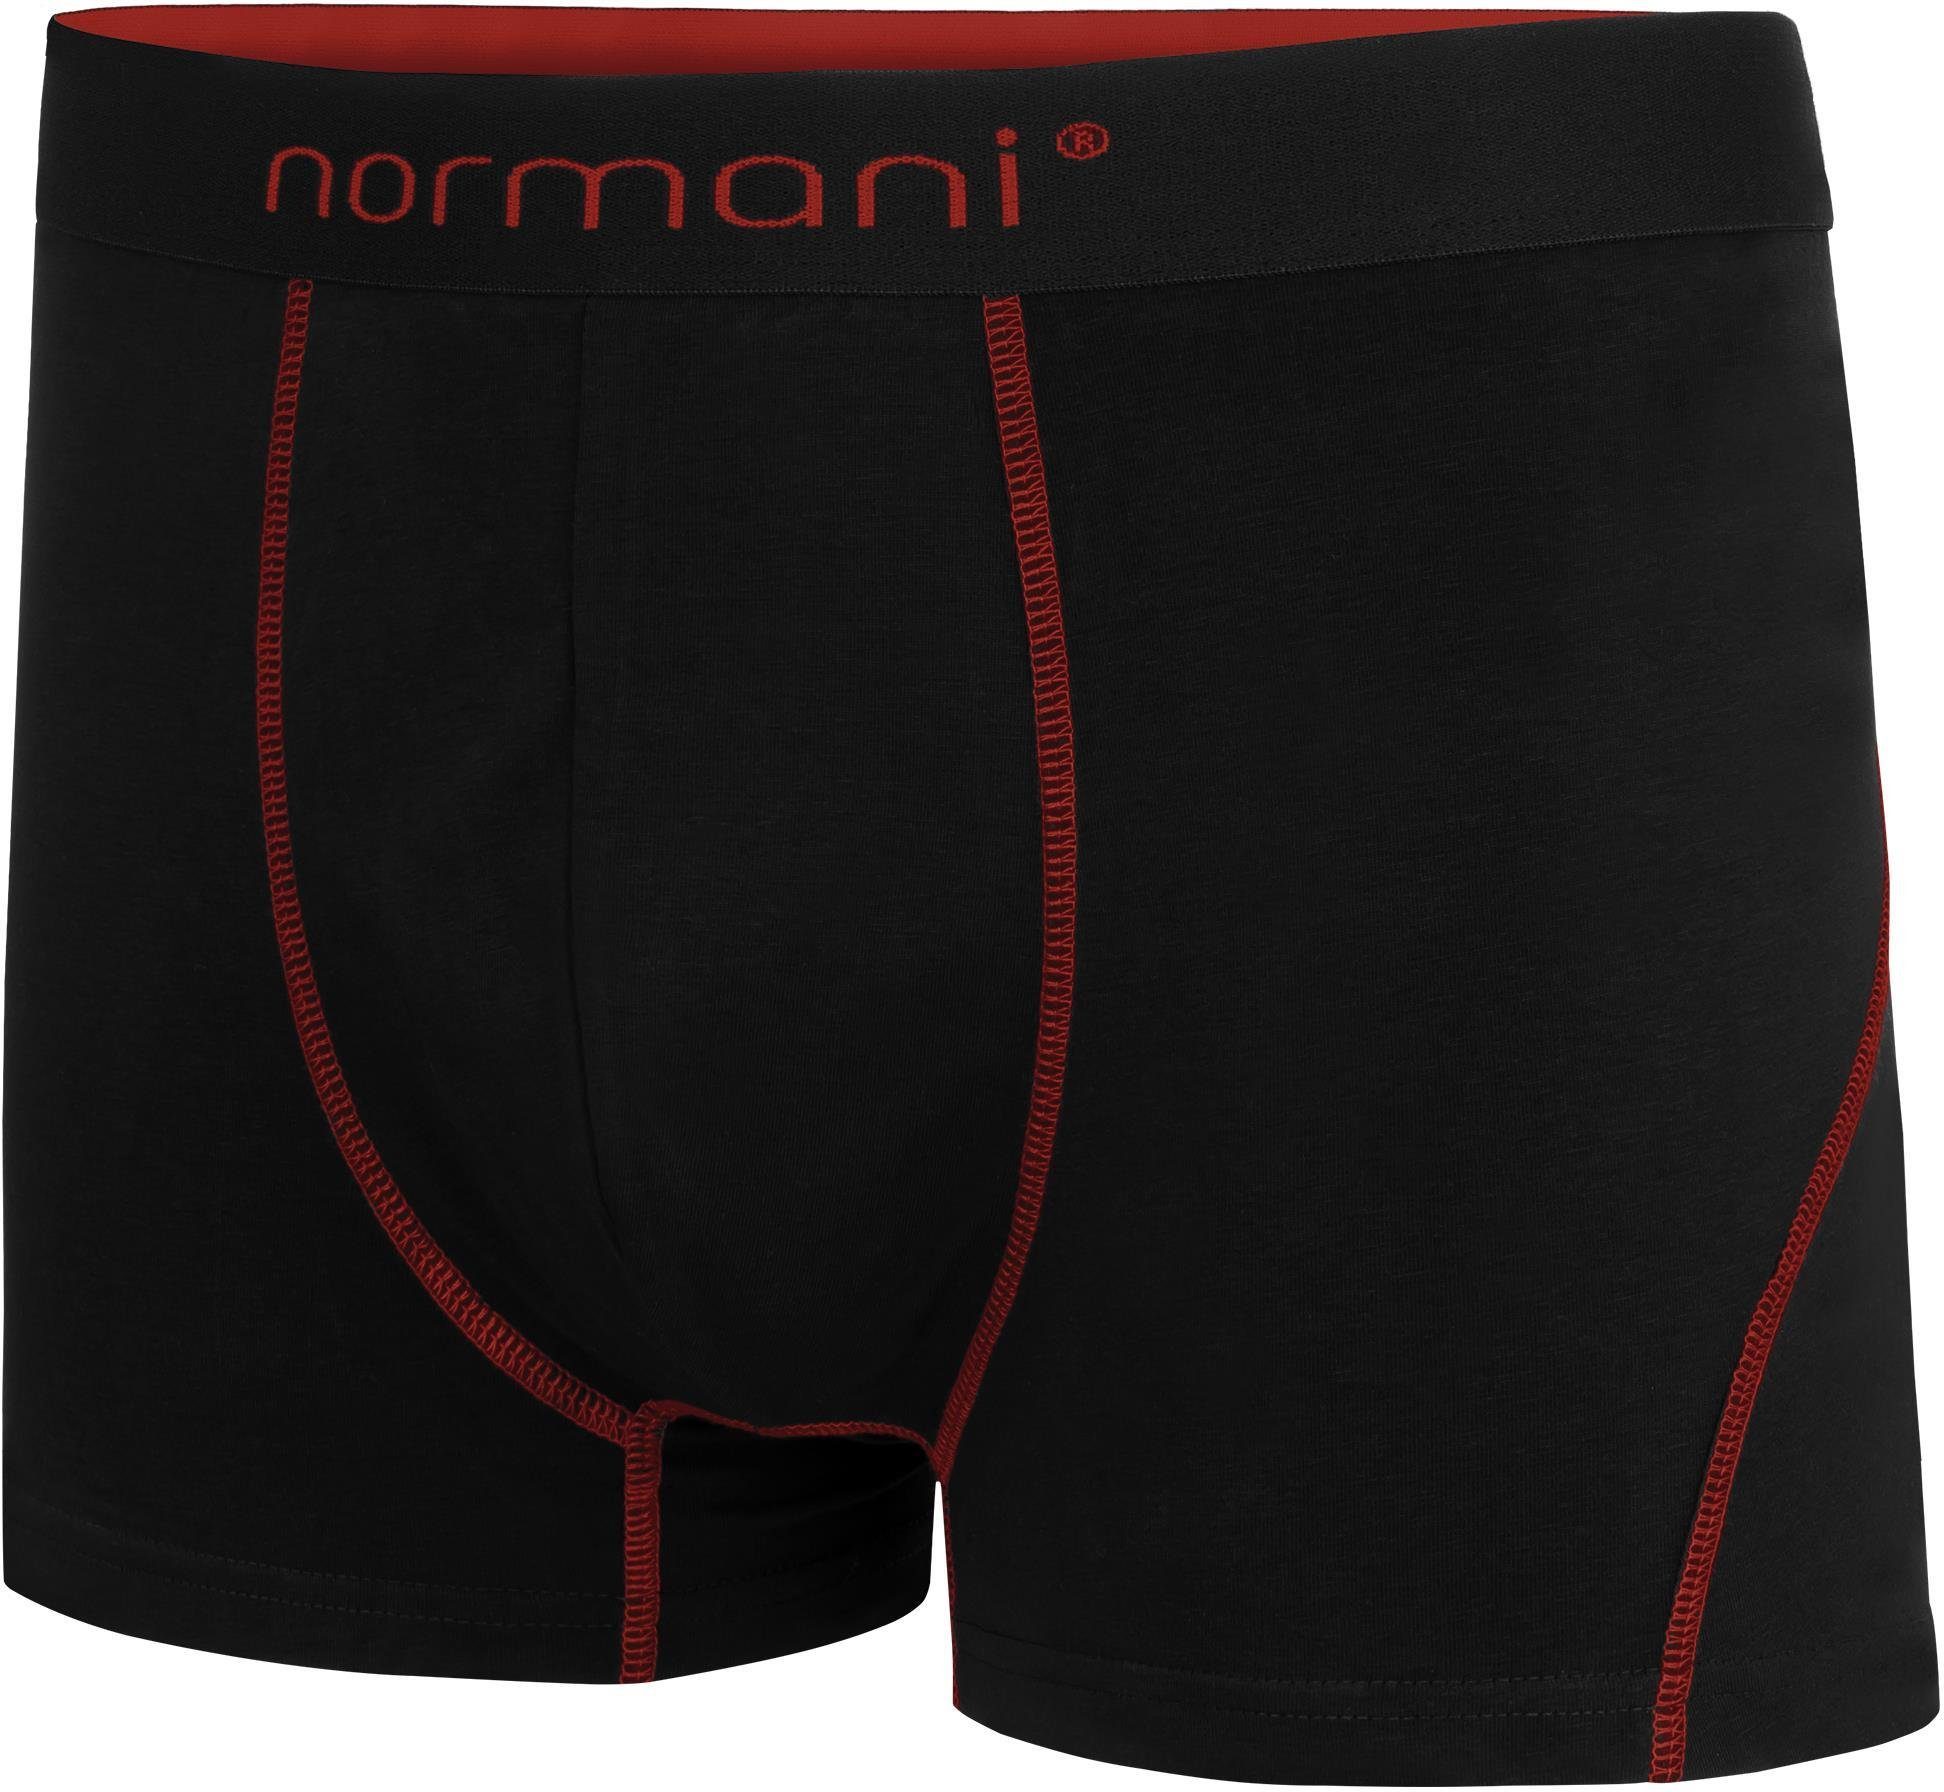 aus Herren 2 Rot Baumwolle Boxershorts atmungsaktiver Boxershorts für Männer Stanley Unterhose normani